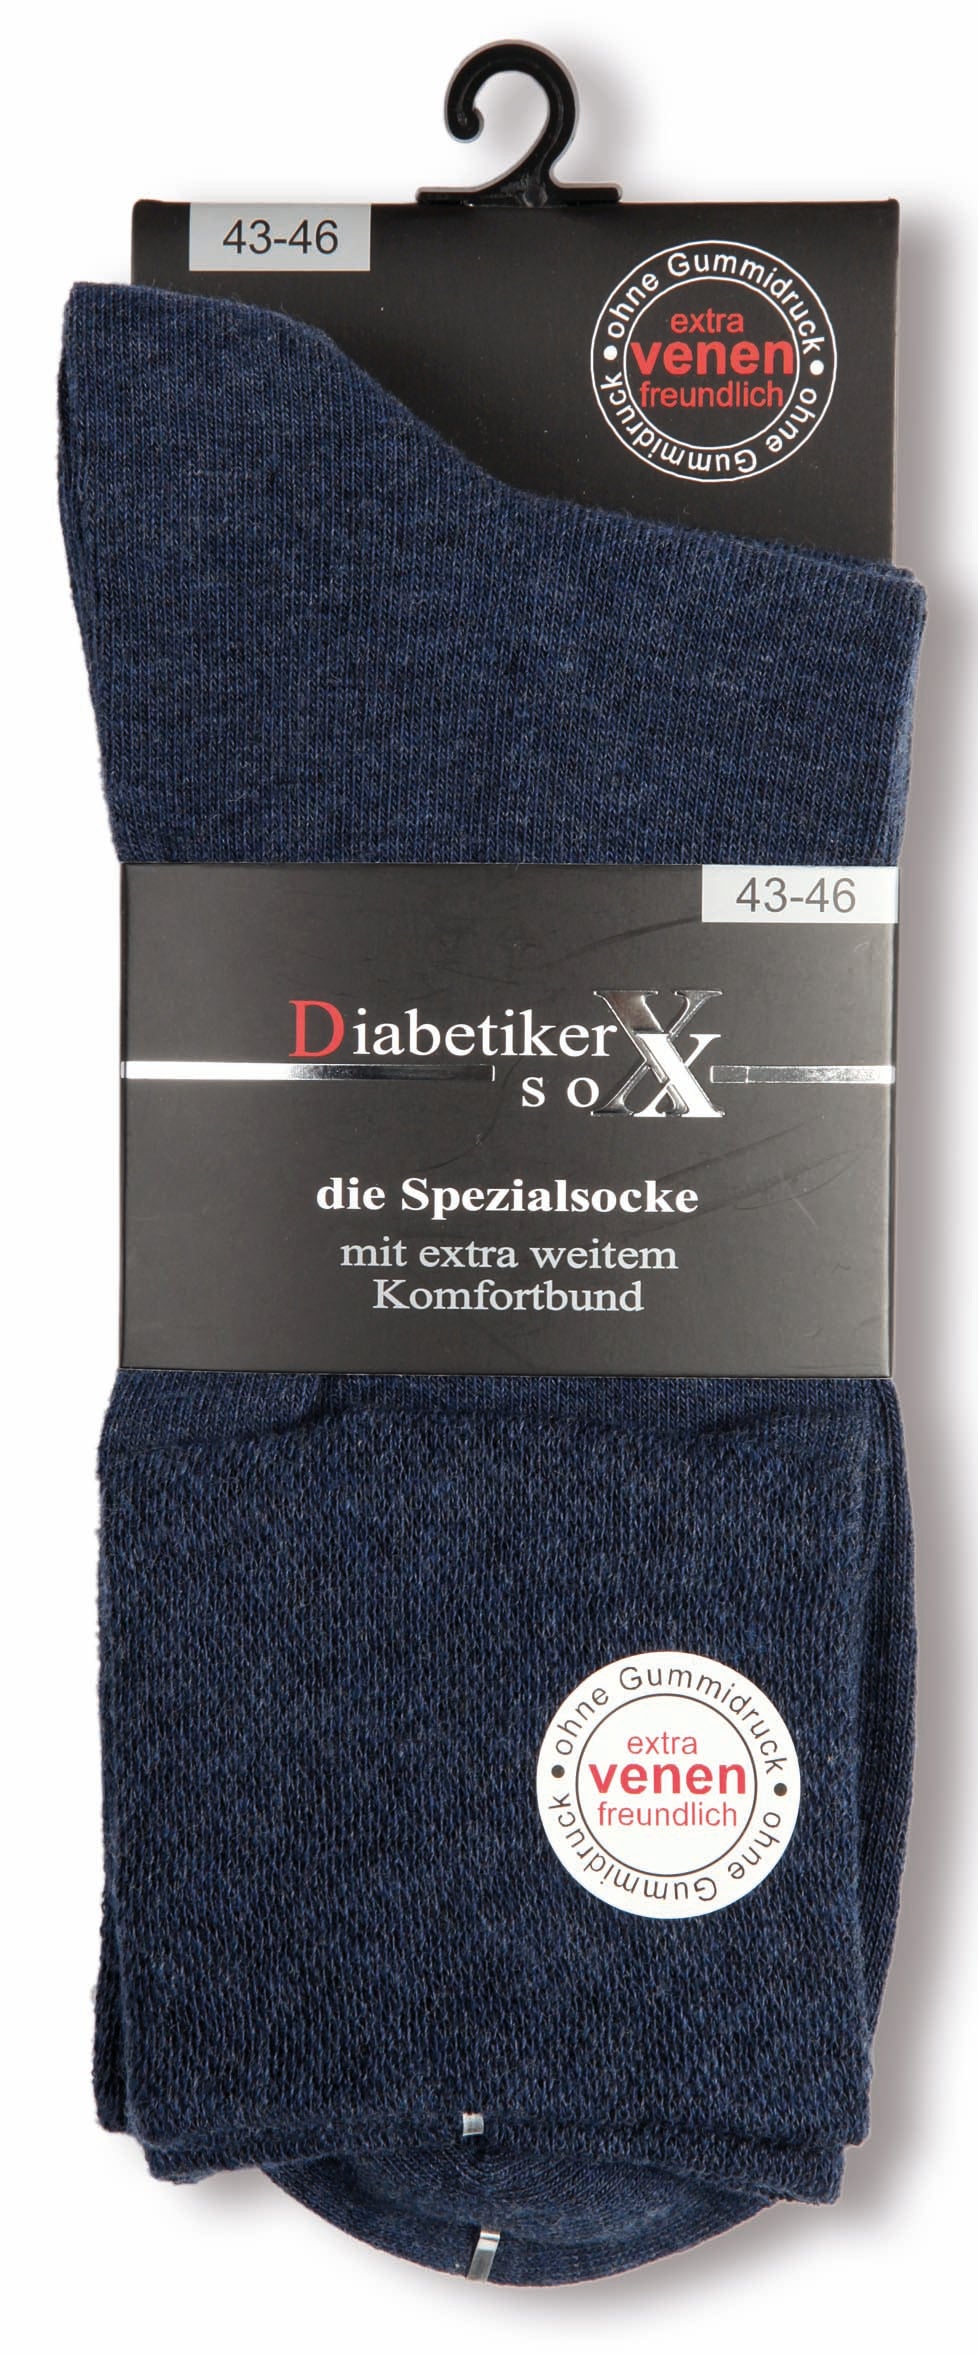 Diabetiker Socken ohne Gummi extra venenfreundlich ohne Naht 97% Baumwolle 3 Paar